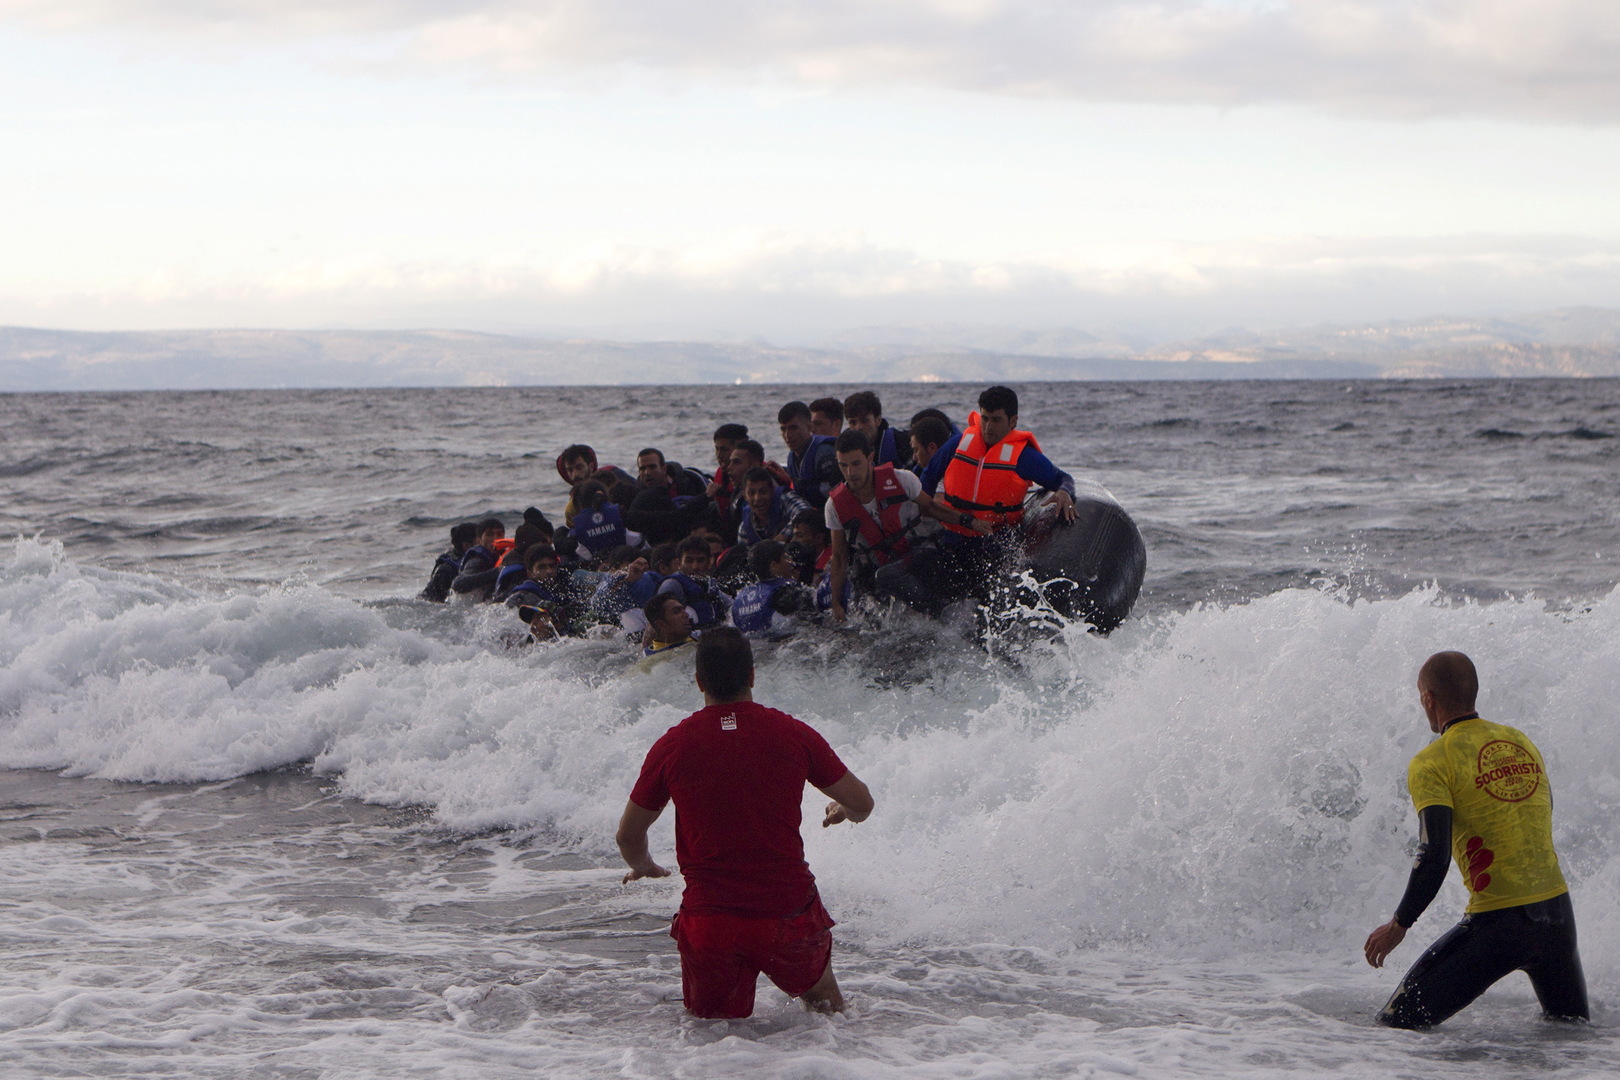 إنقاذ 30 مهاجرا غرق قاربهم قبالة كريت والبحث جار عن آخرين